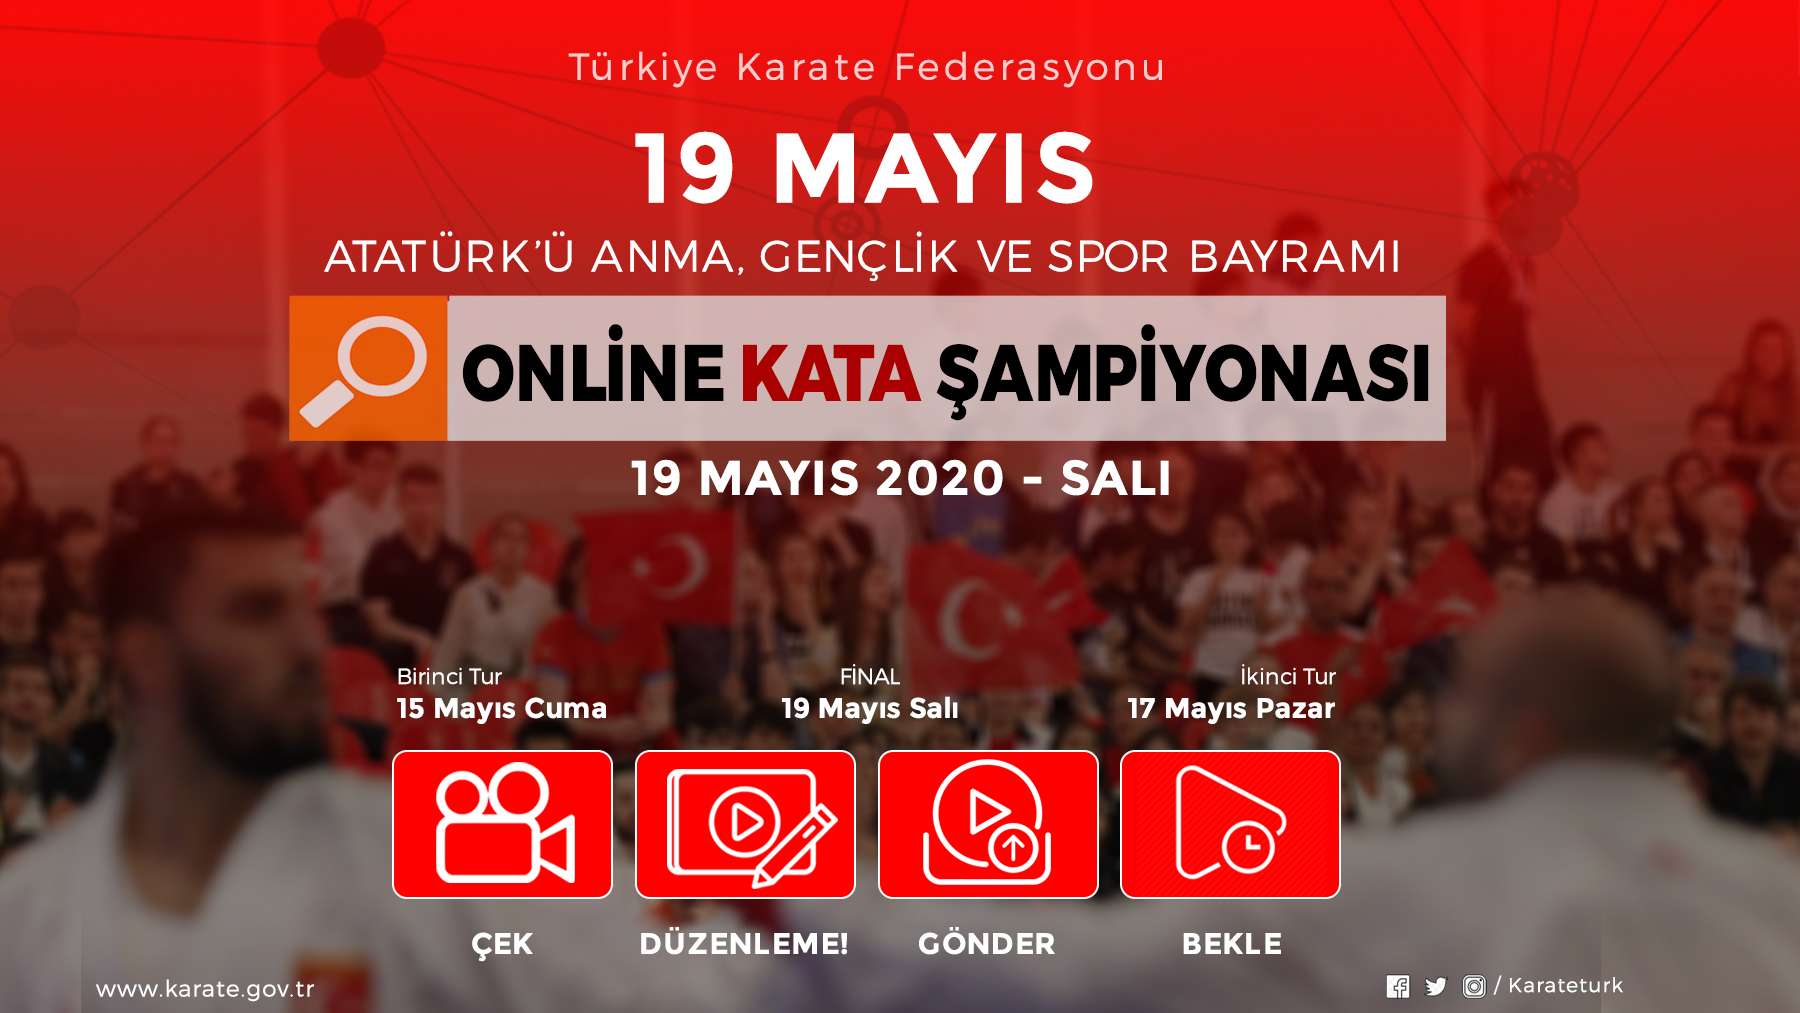 19 Mayıs Atatürk'ü Anma Gençlik ve Spor Bayramı Online Kata Şampiyonası